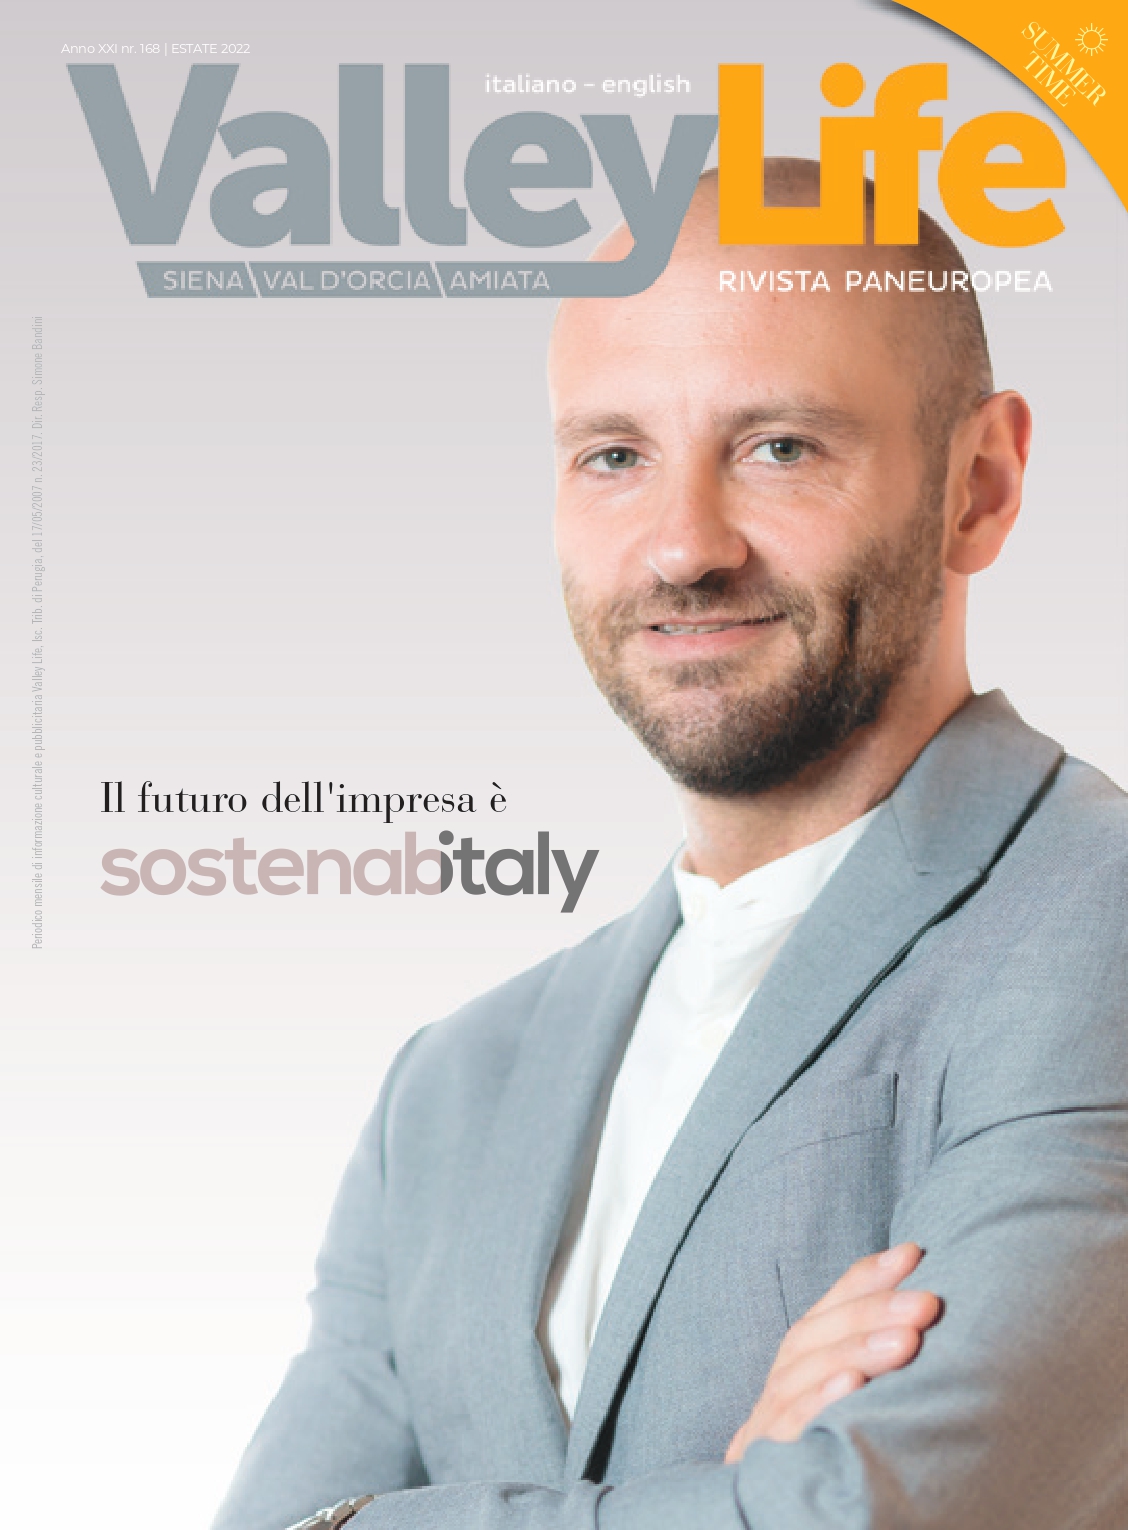 Valley Life “Siena, Valdorcia &Amiata” Summer edition